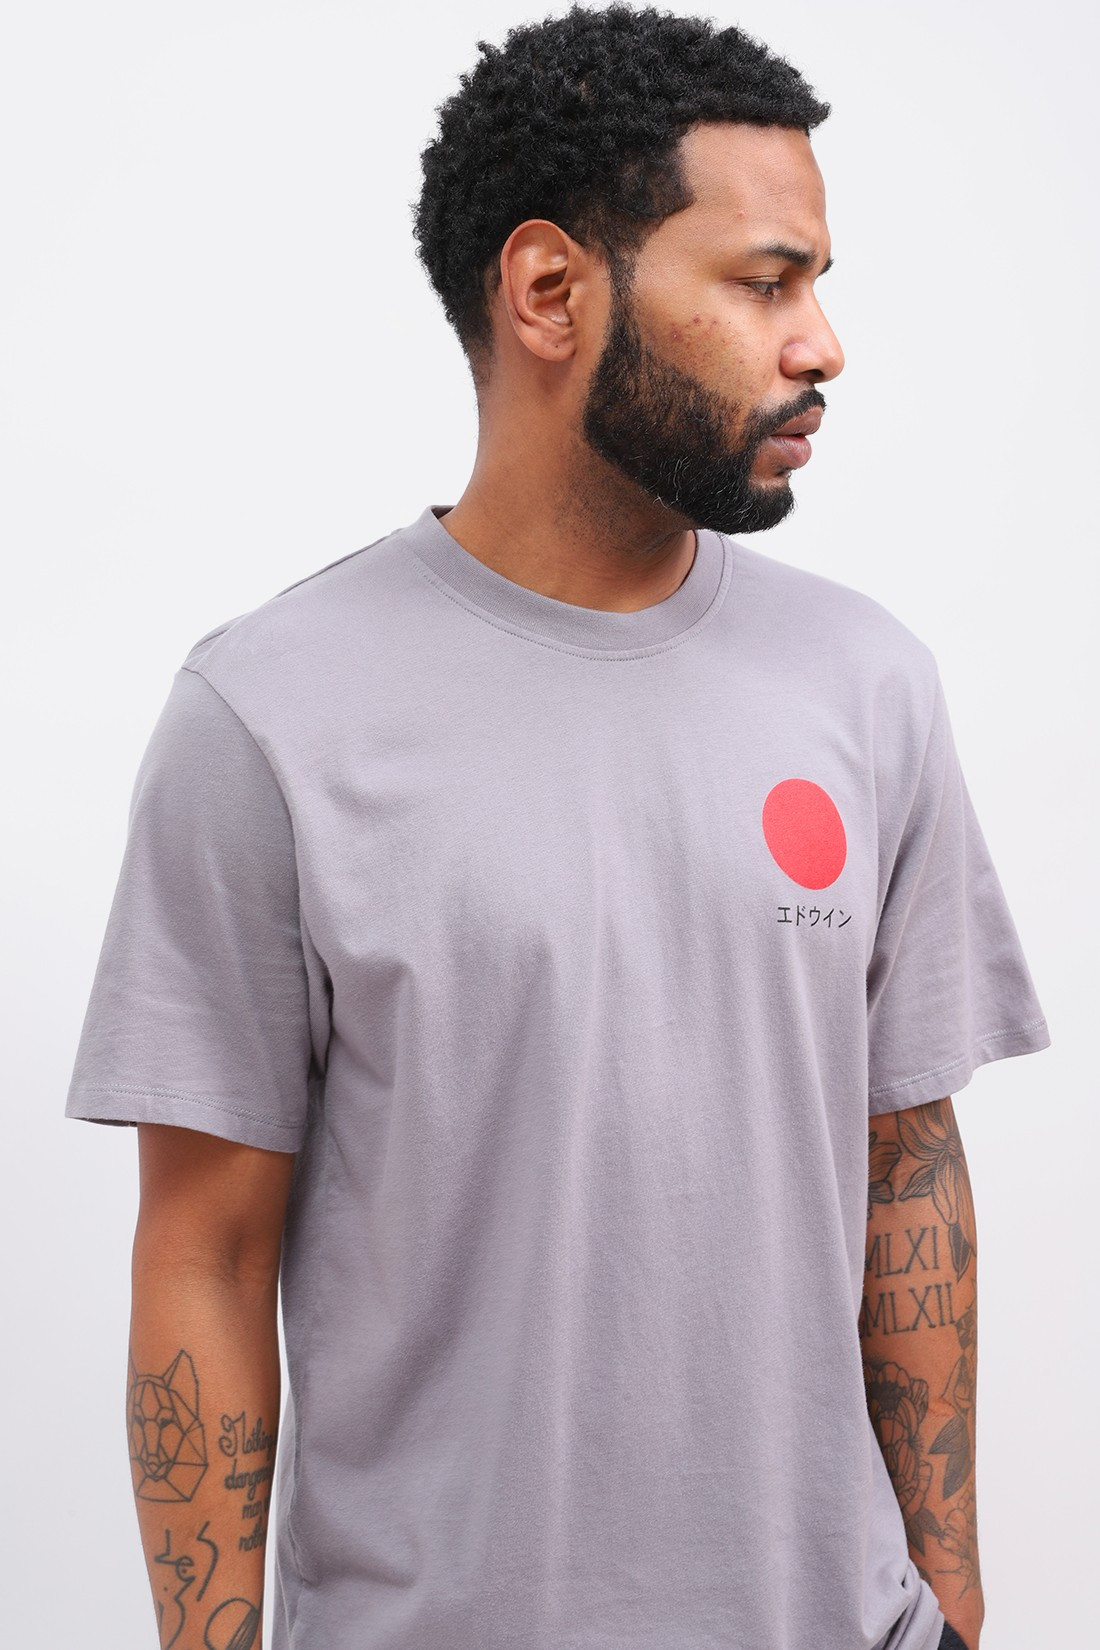 EDWIN / Japanese sun tee shirt Frost grey